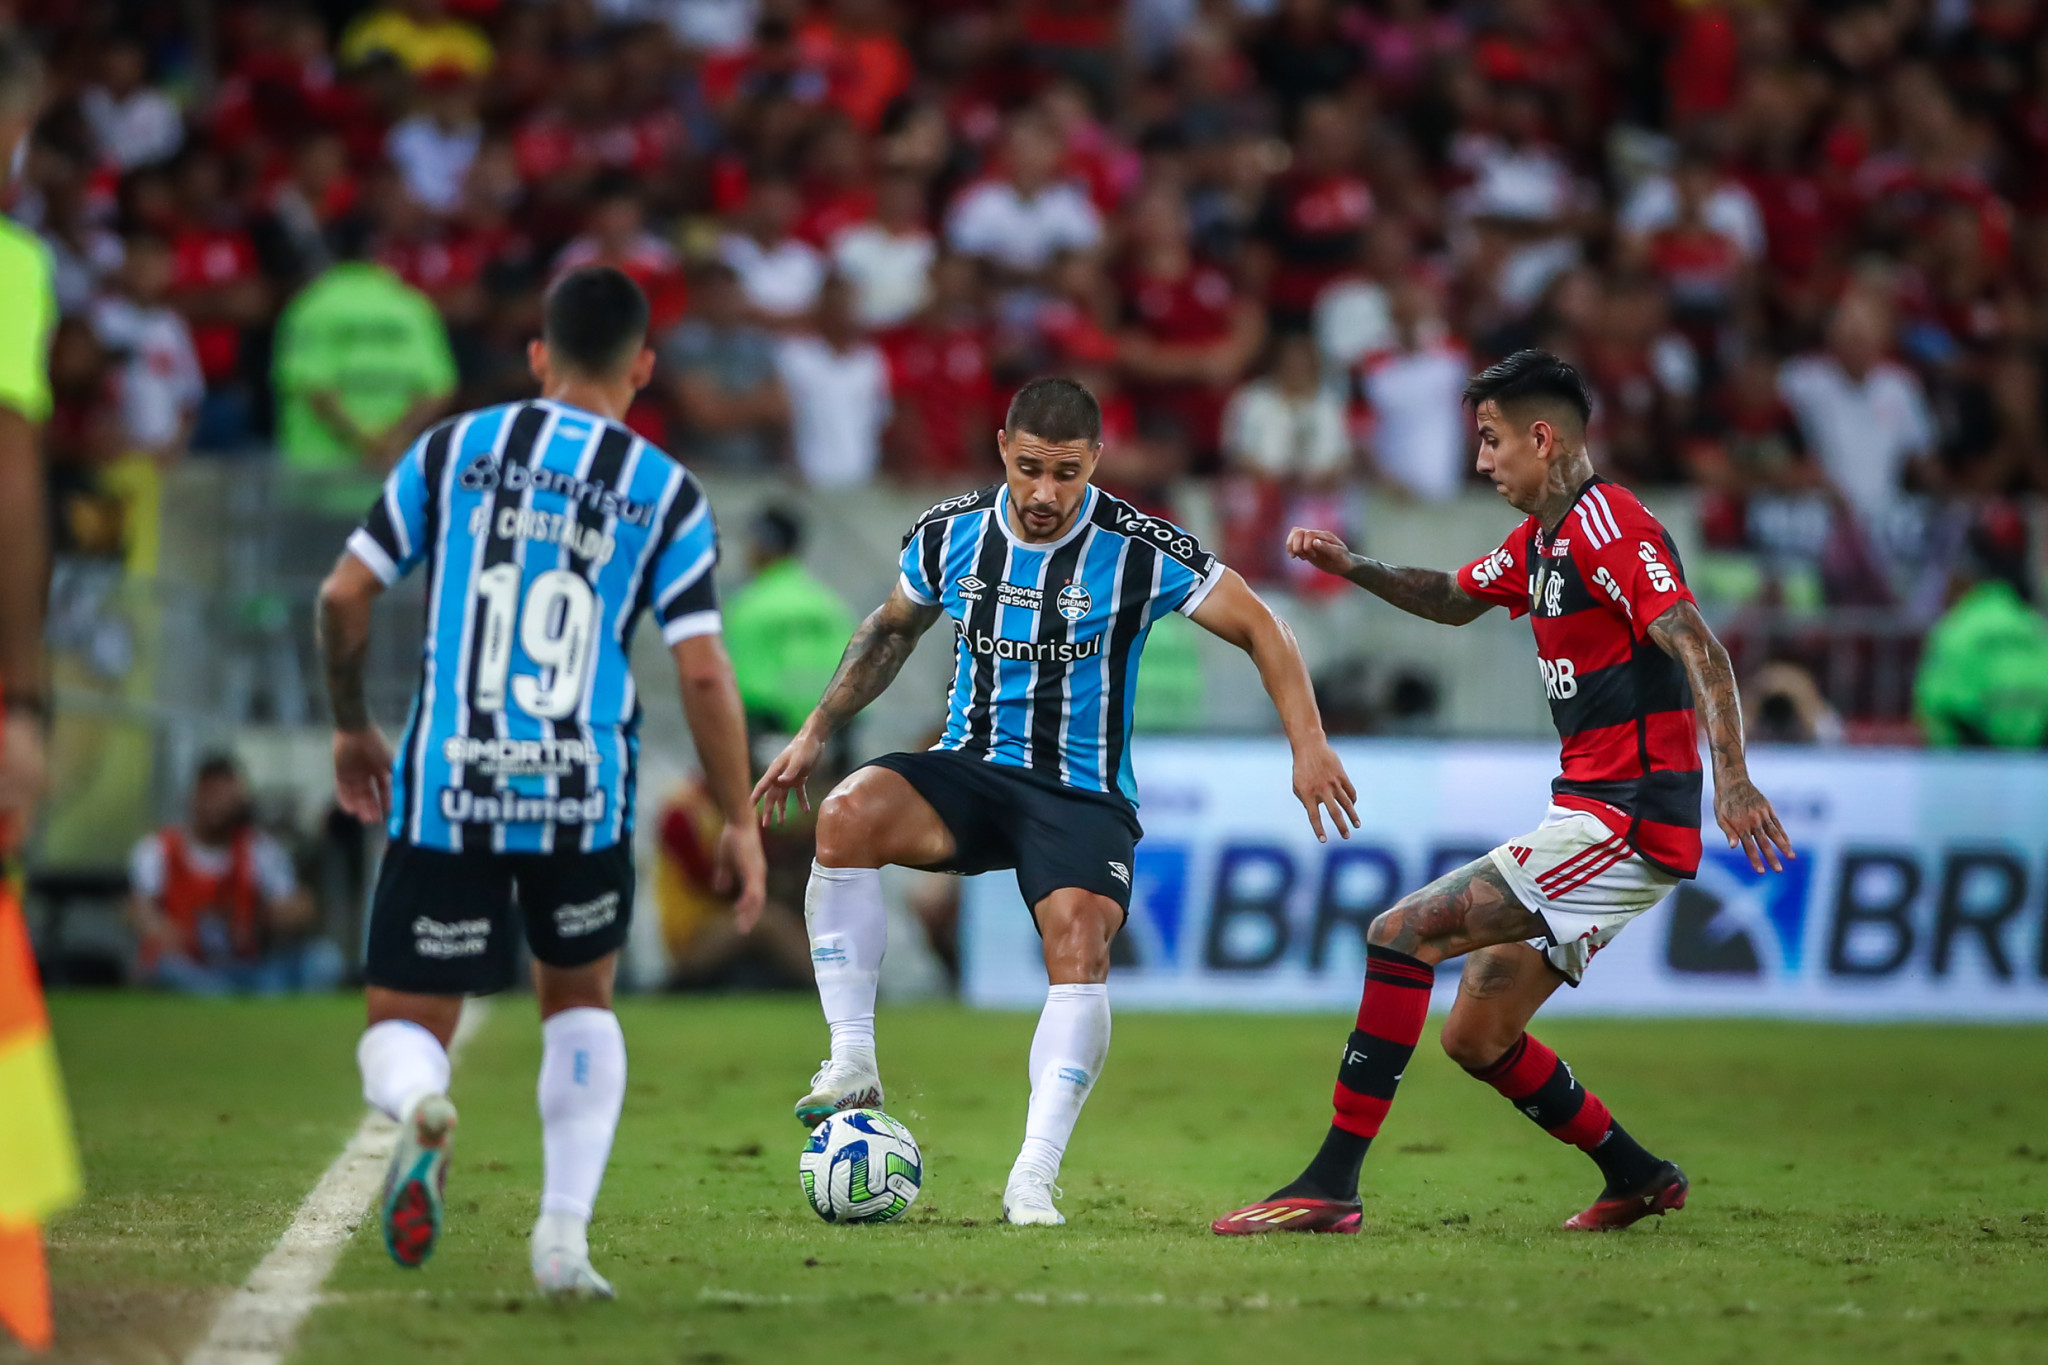 Antes do jogo do Flamengo, meio-campista rescinde com o Grêmio